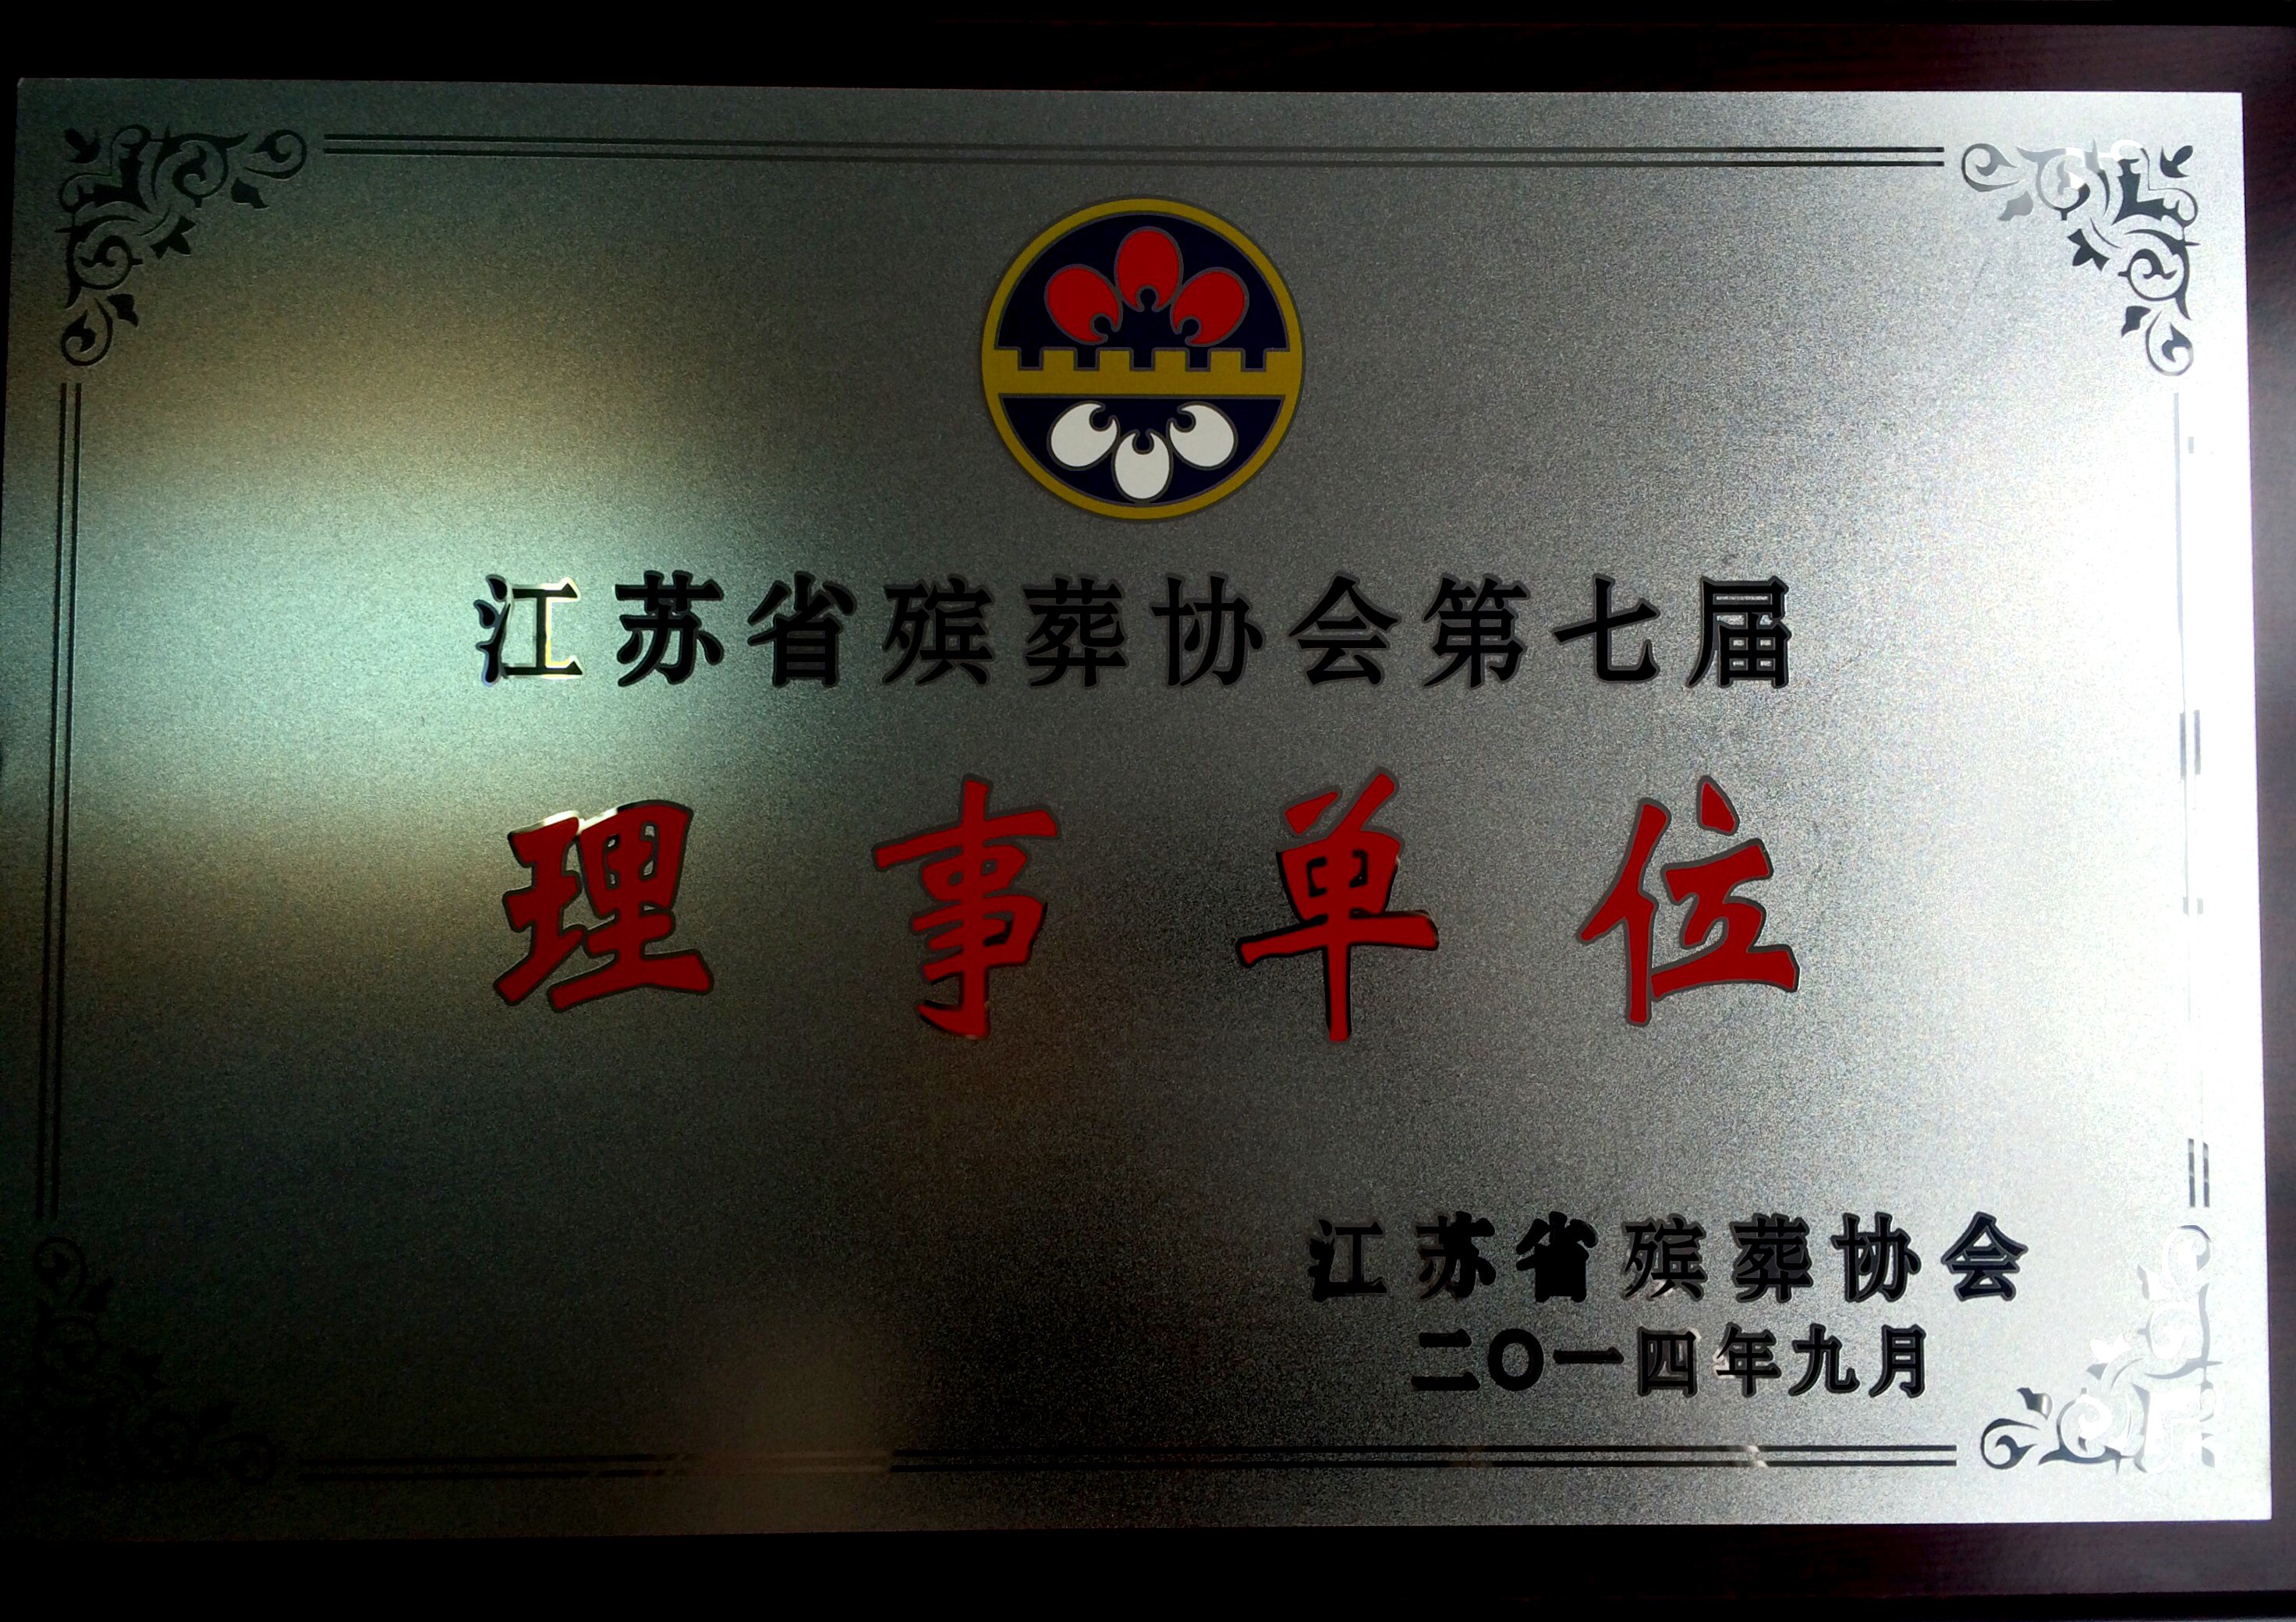 江苏殡葬协会理事单位 (1)